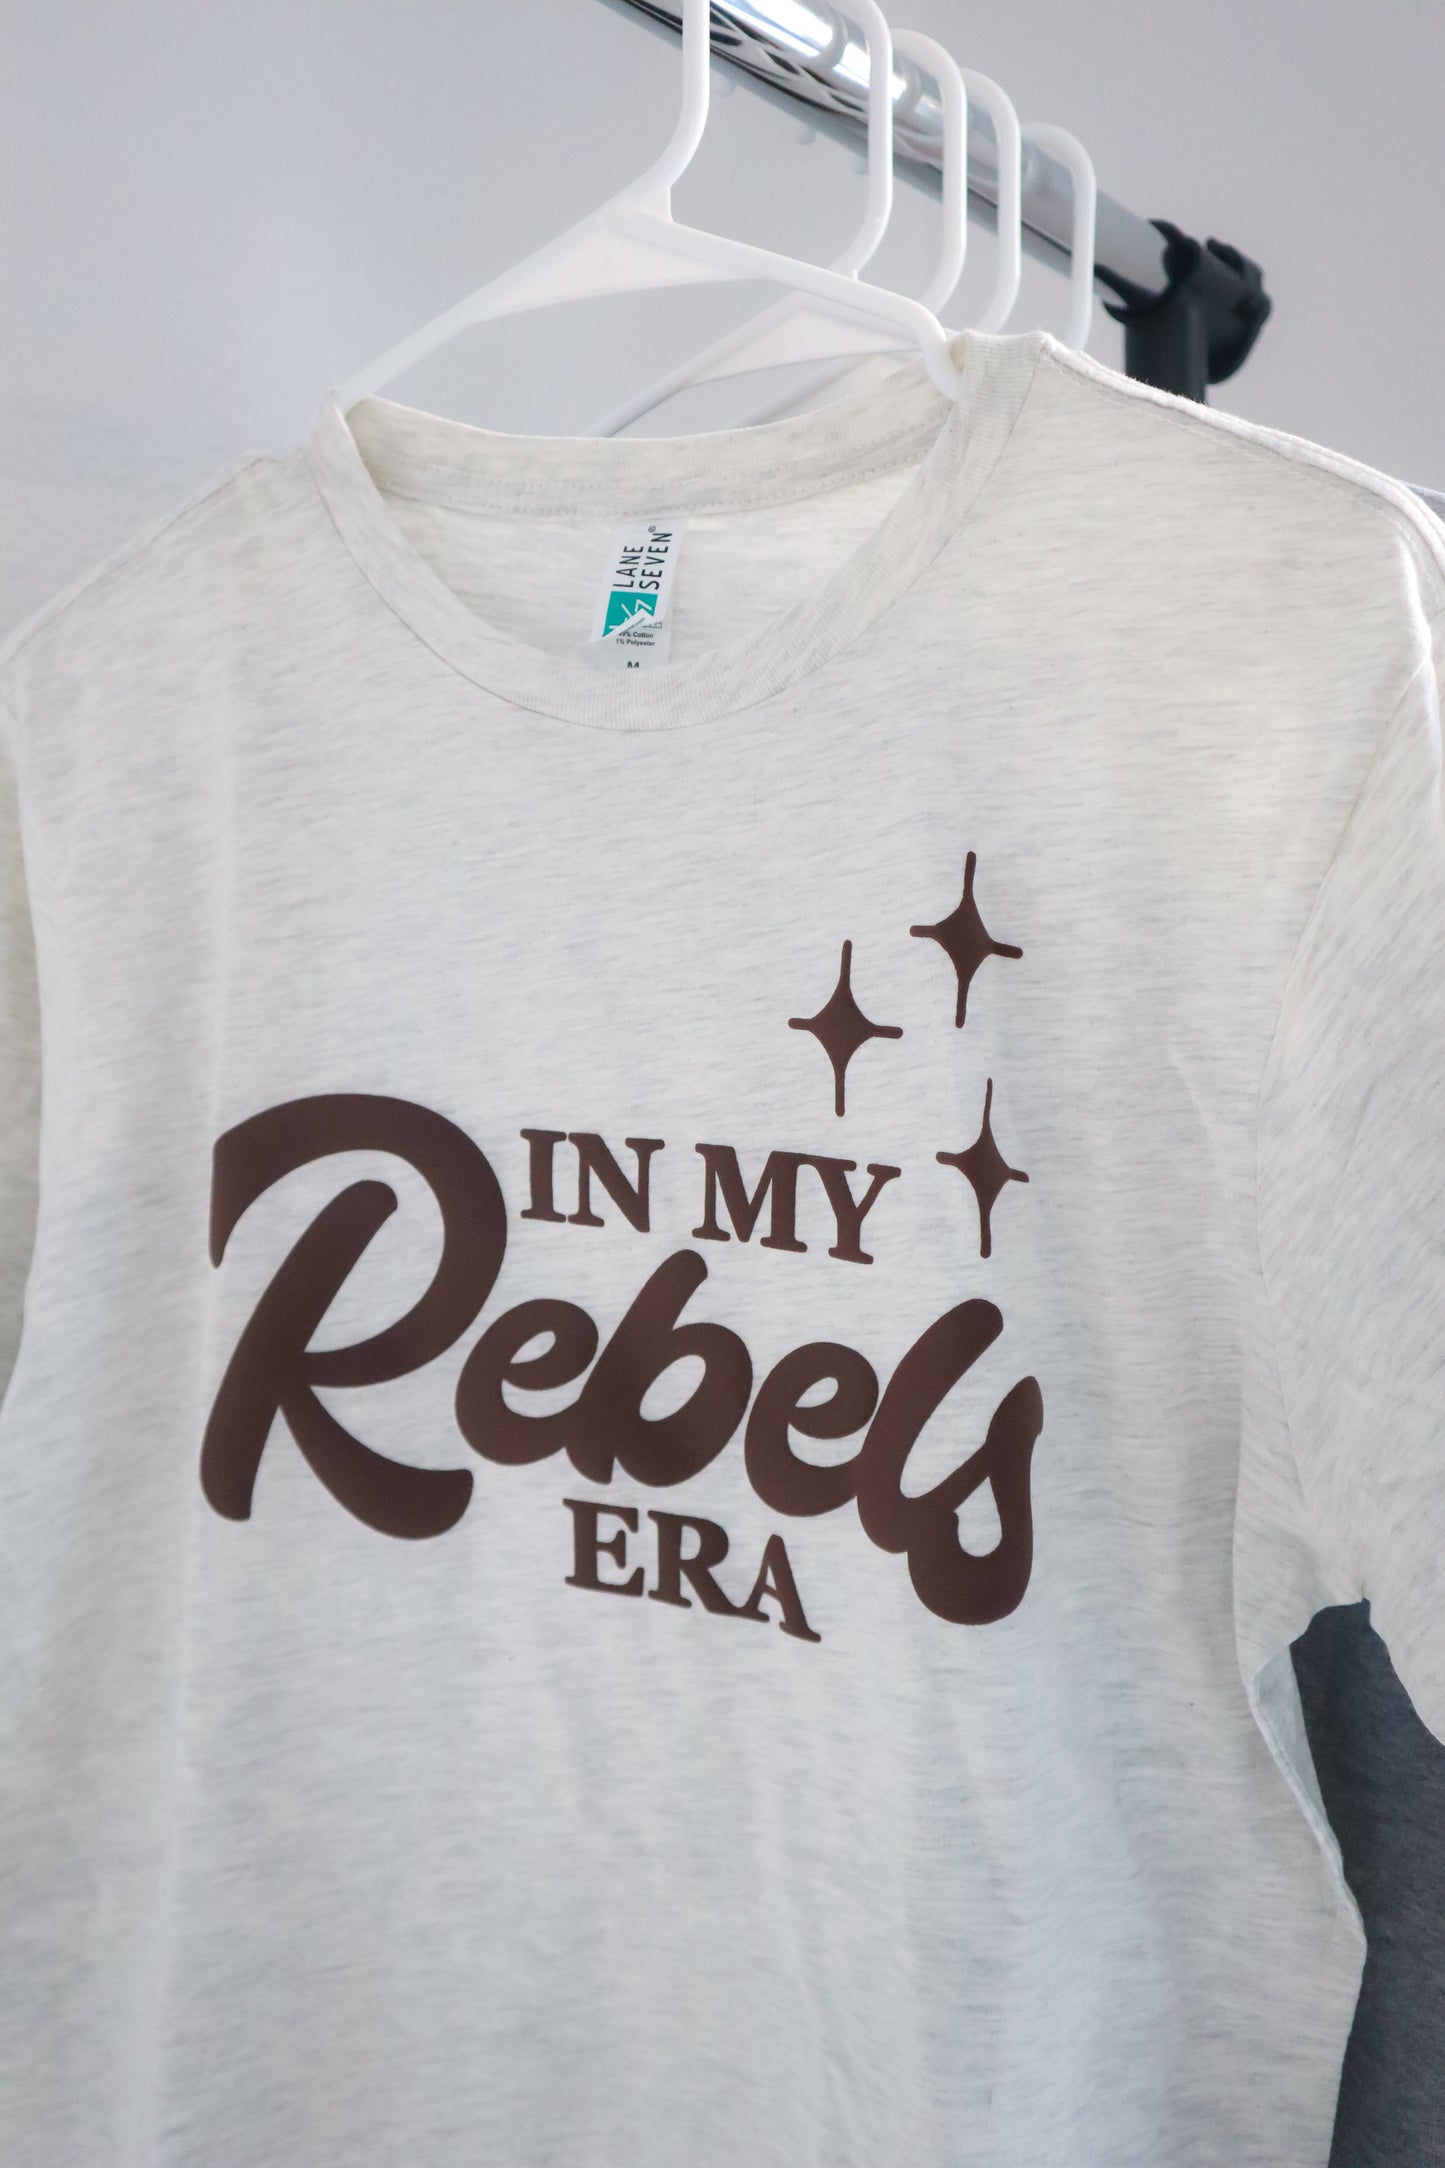 In My Rebels Era Tee